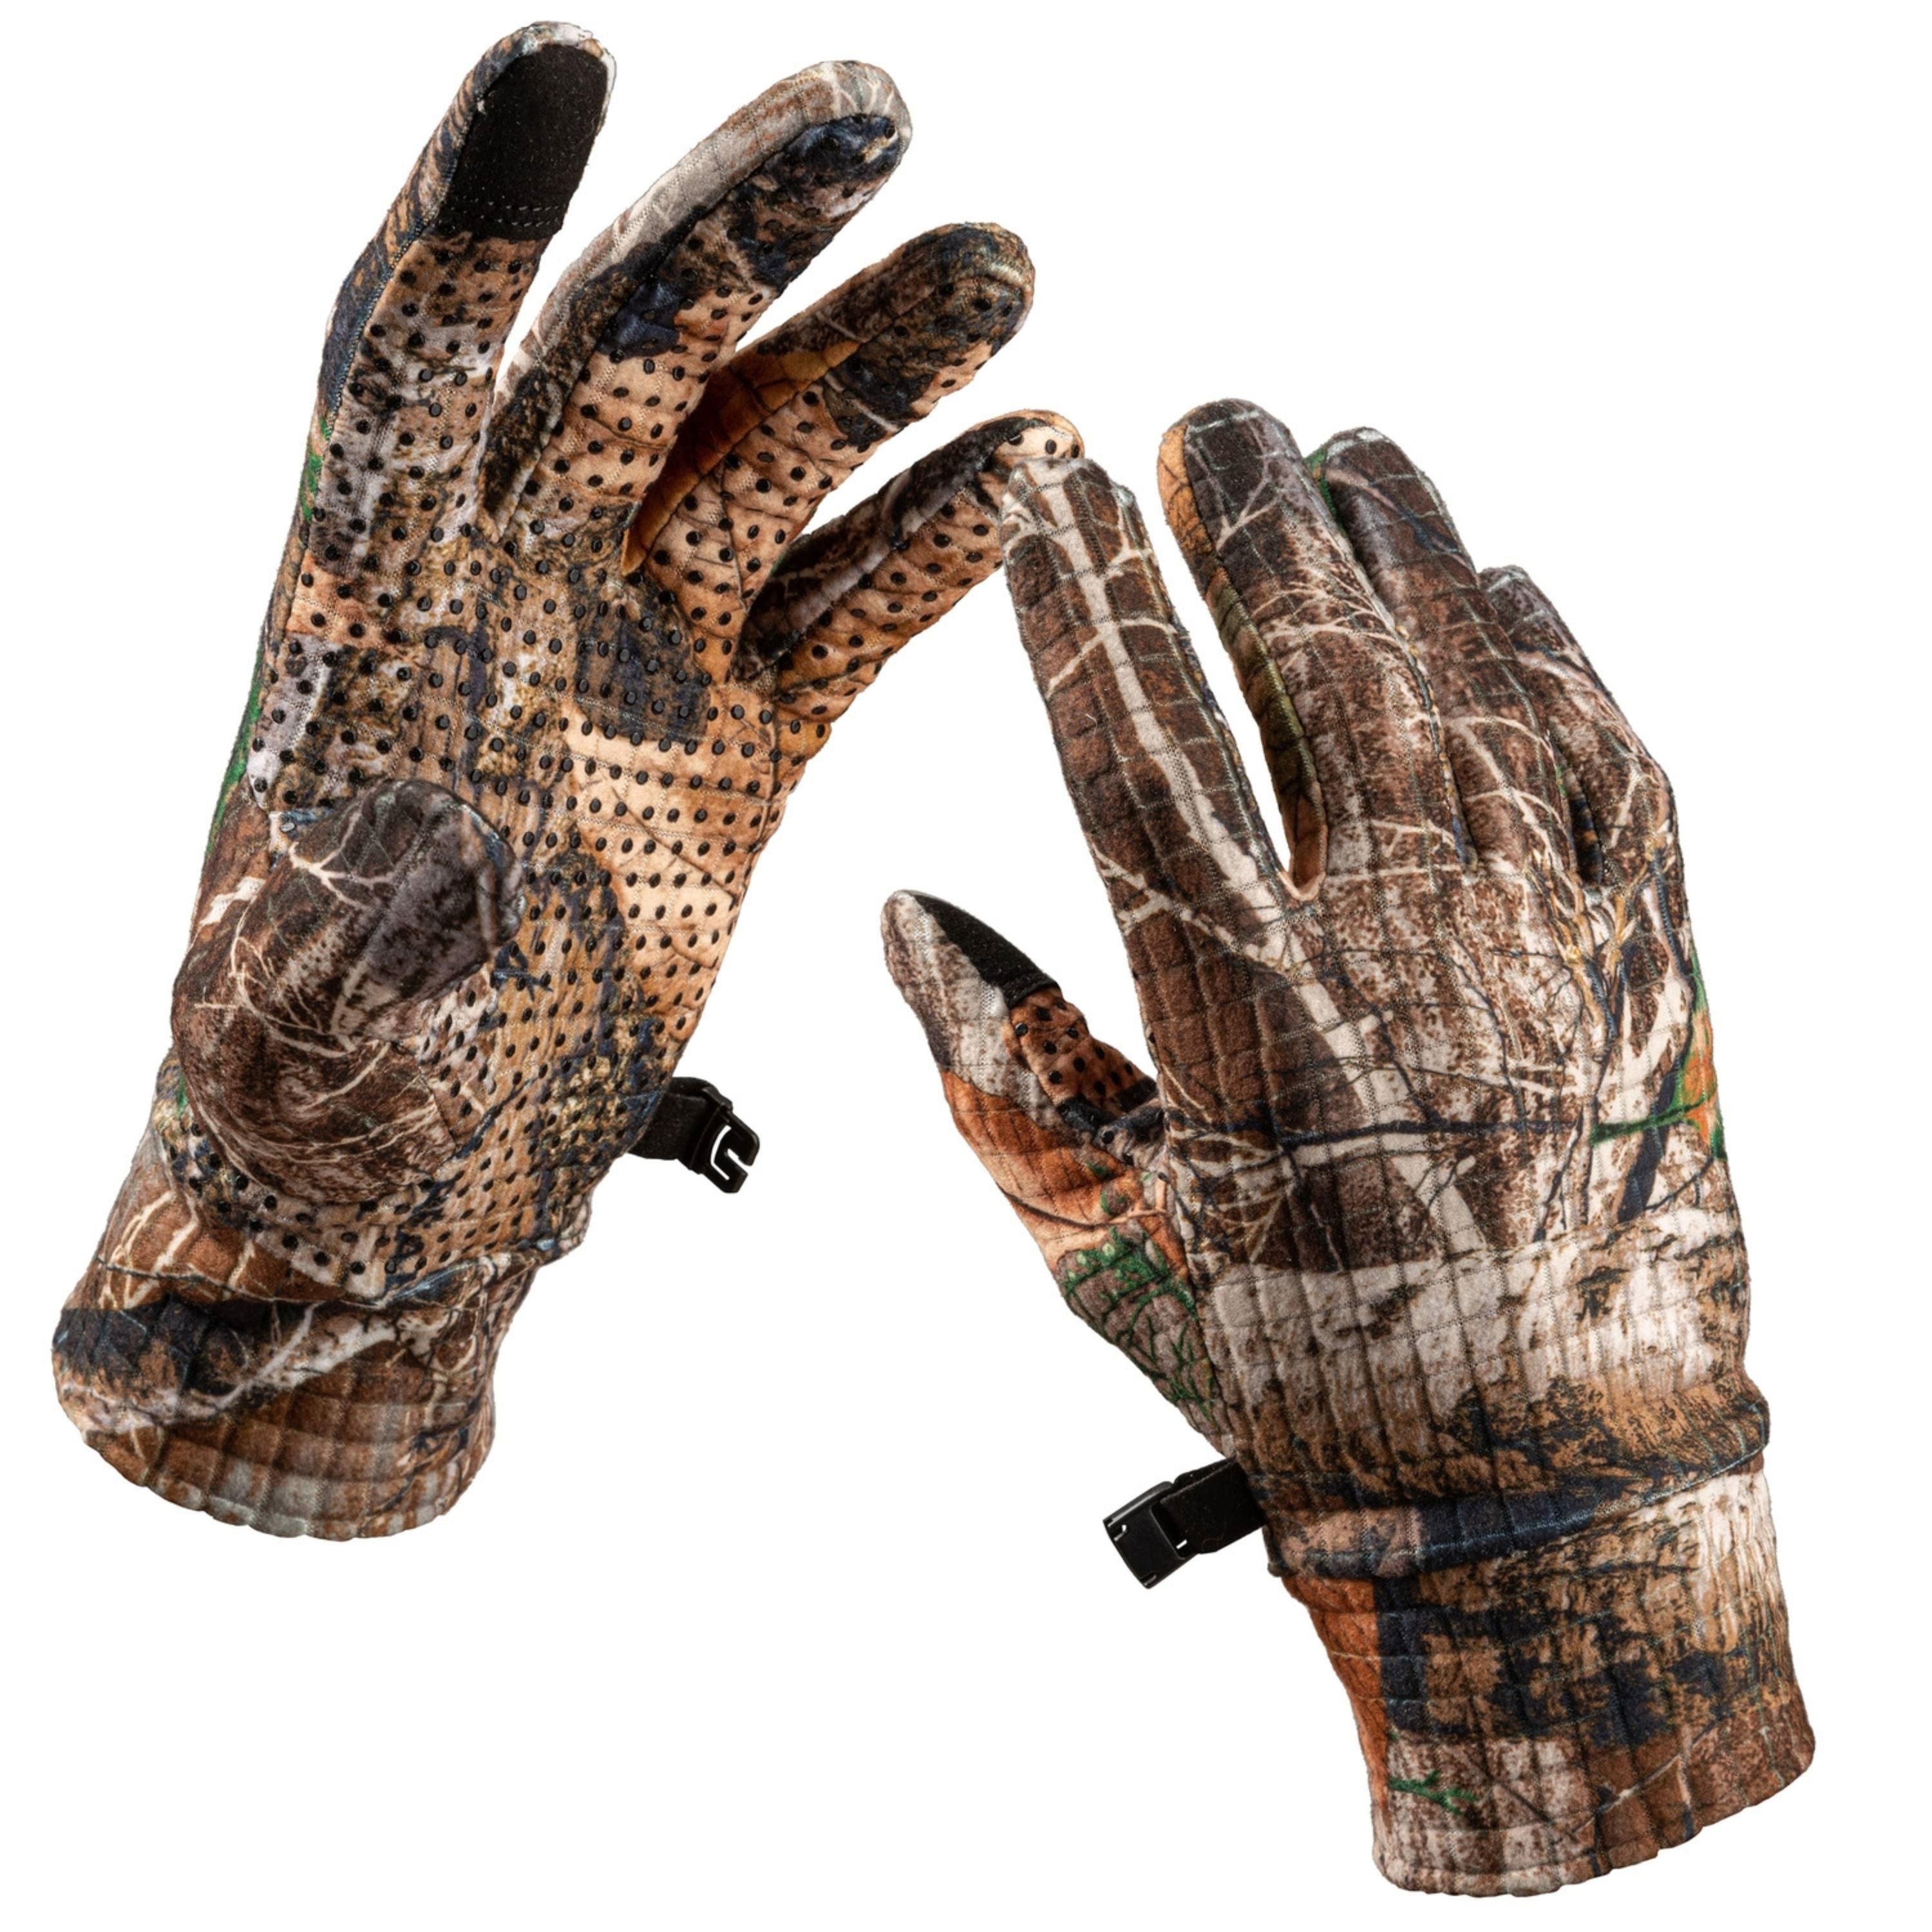 Gants "Pioneer" - Homme||"Pioneer" Gloves - Men's